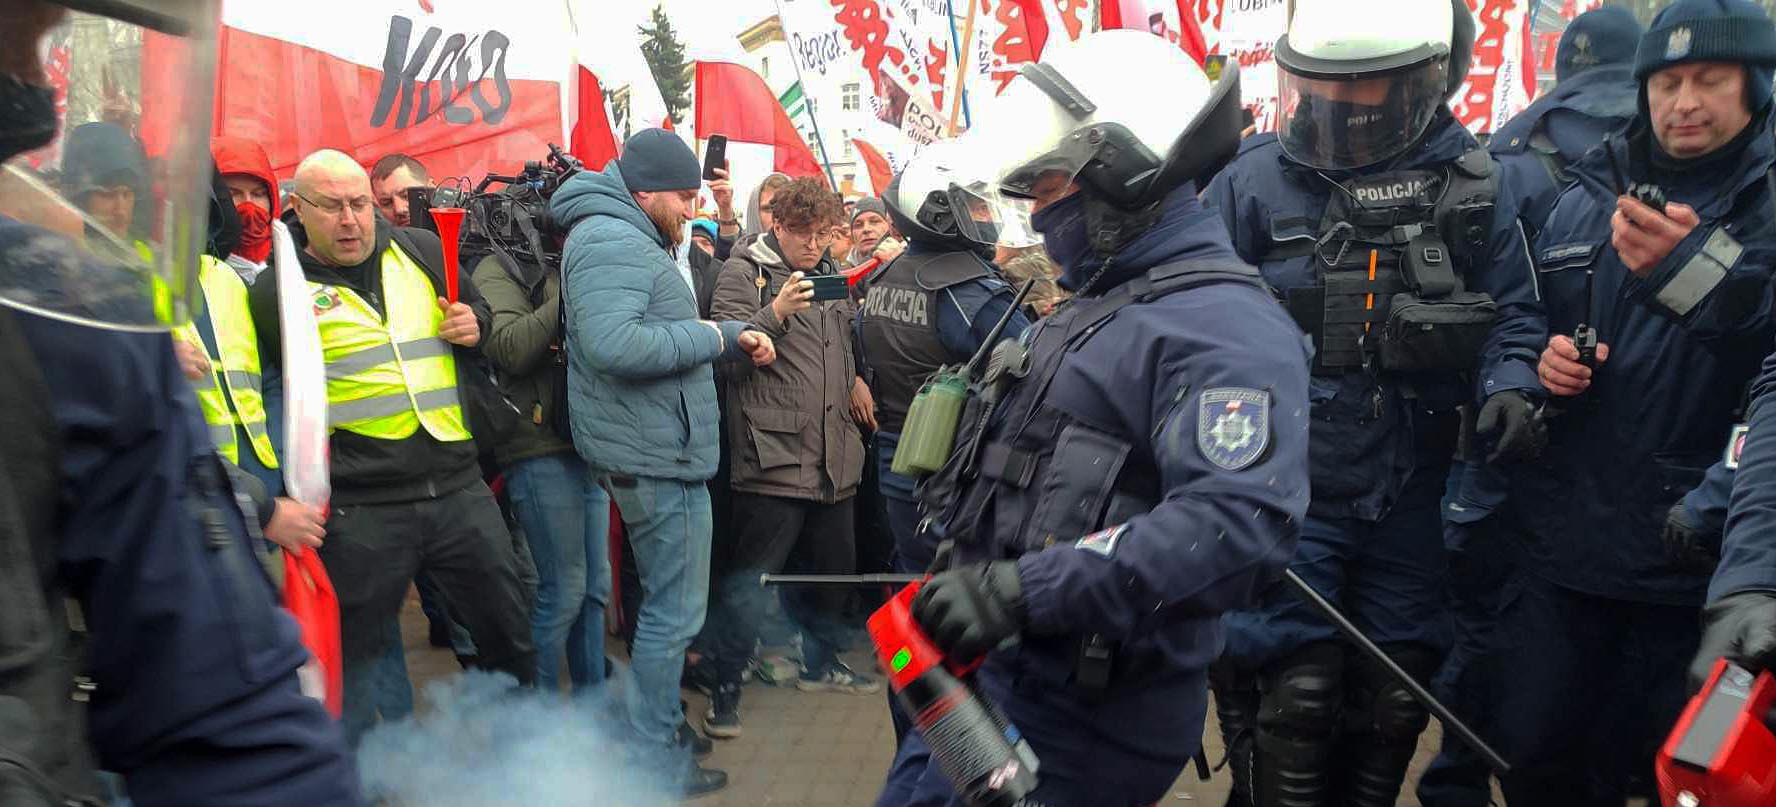 Protest rolników w Warszawie. Zobaczcie co się działo (ZDJĘCIA) (VIDEO)